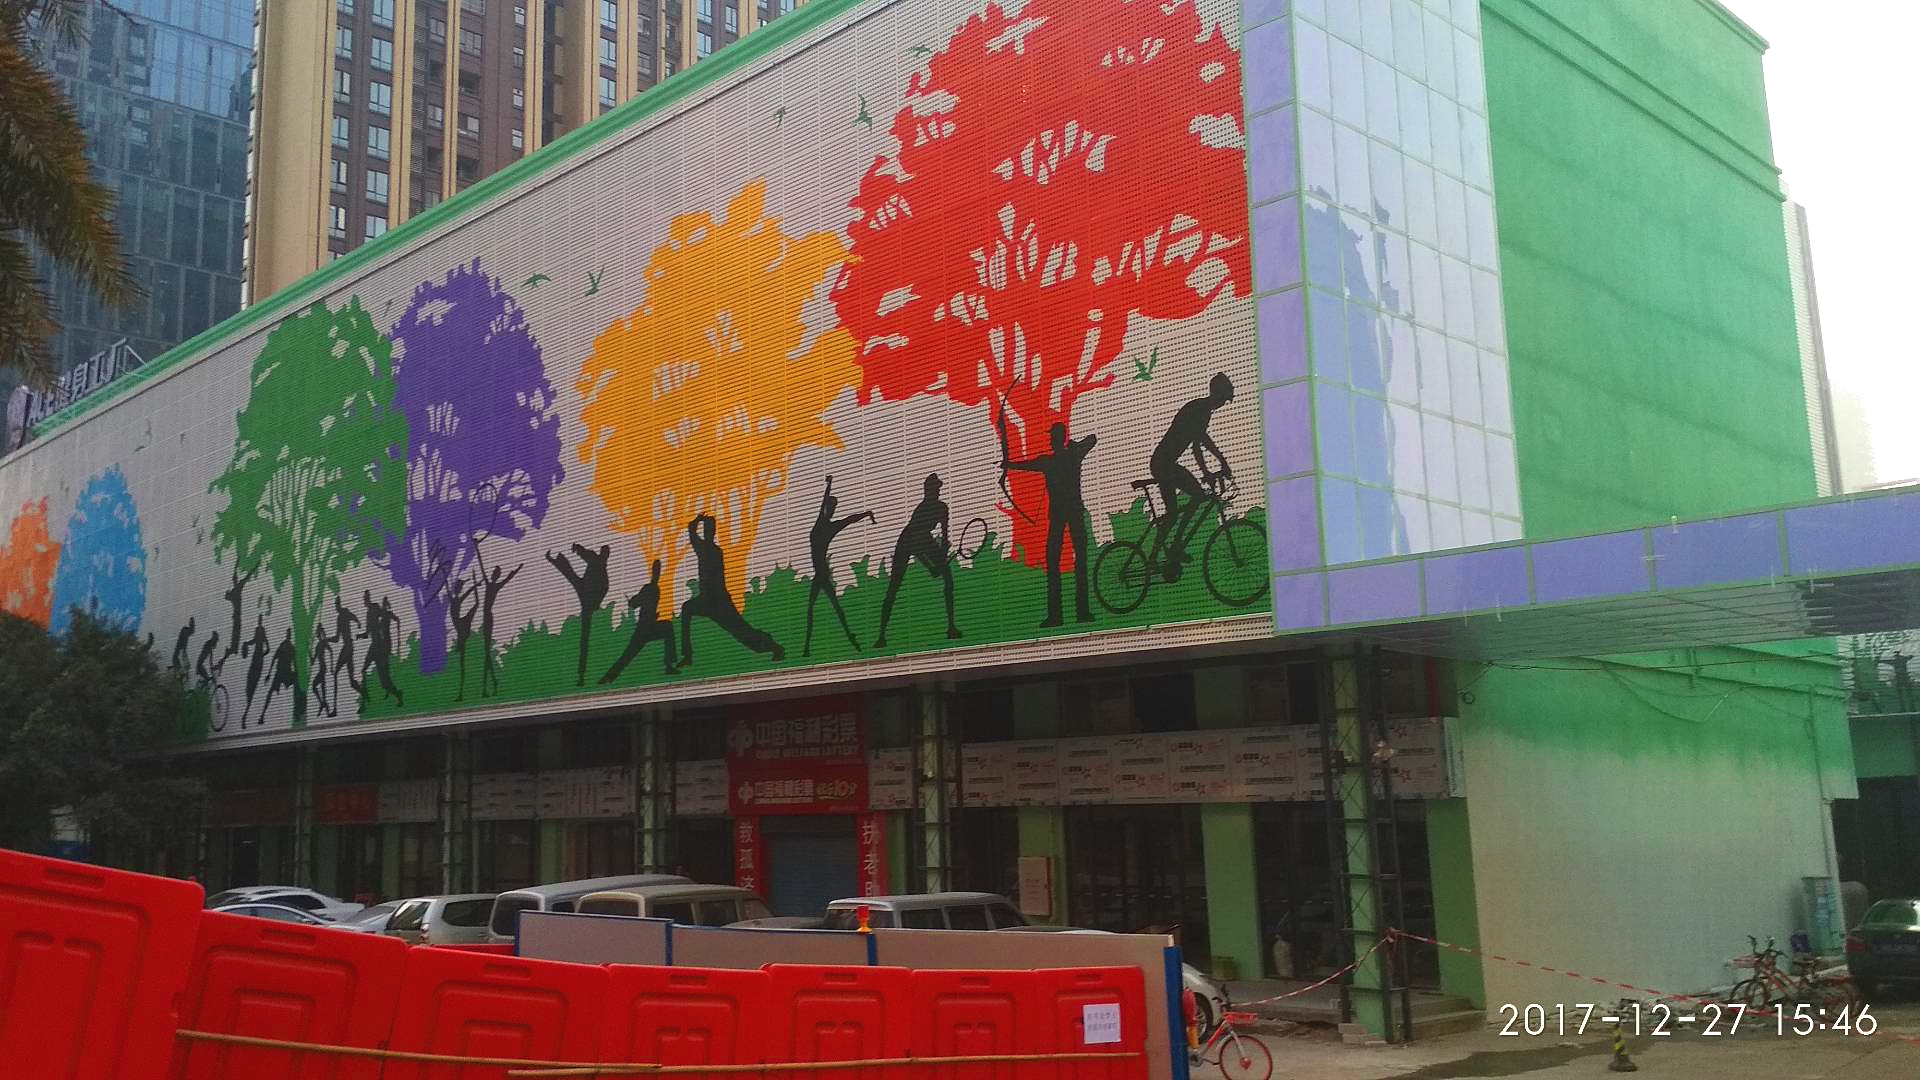 广东地区     佛山 禅城 南海 顺德 三水 高明  巨型场馆彩绘壁画涂装  巨幅墙绘彩绘